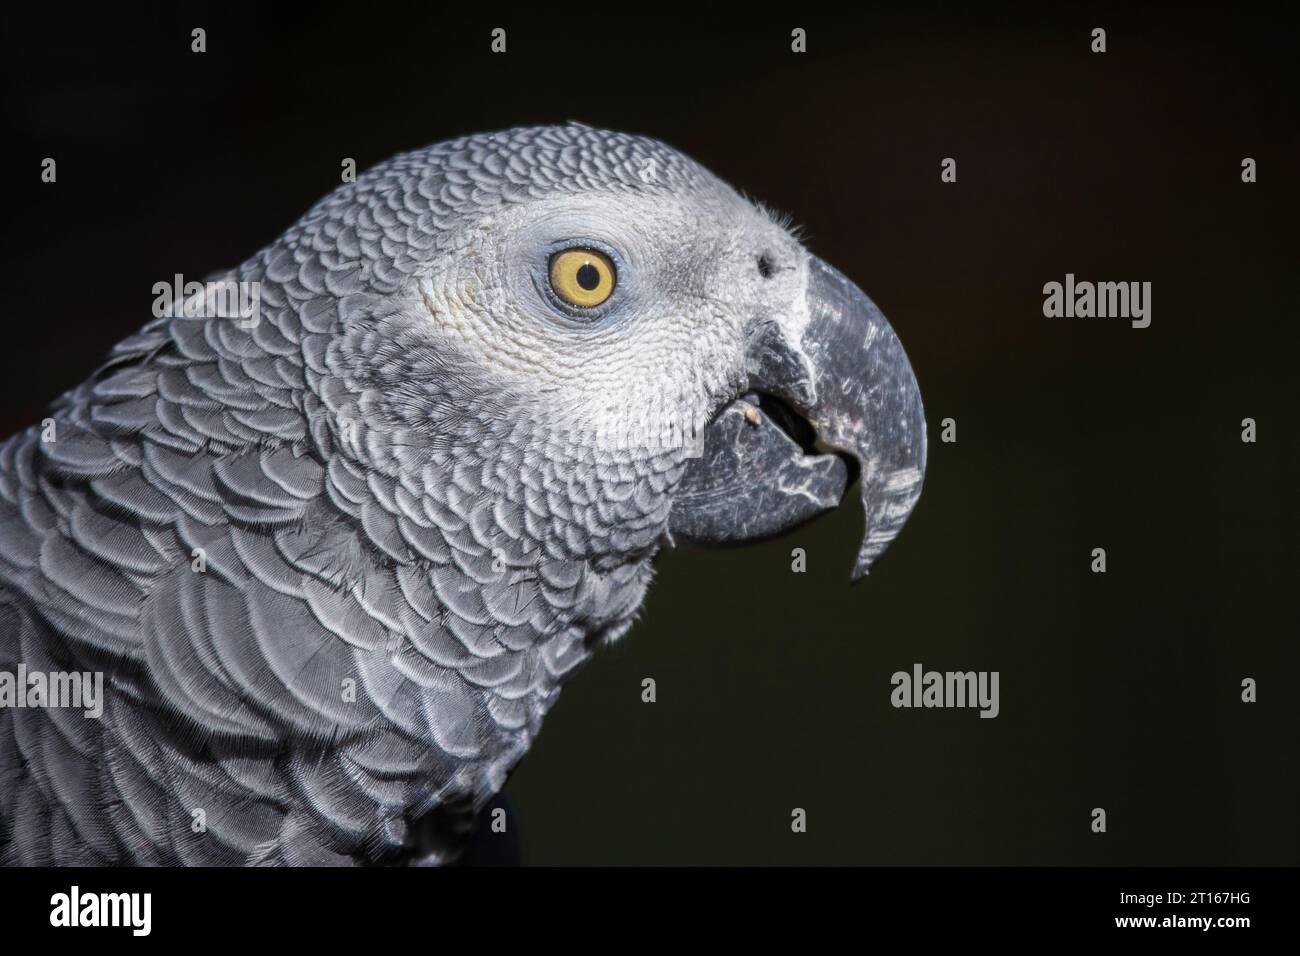 Ein sehr nahes Porträt eines afrikanischen grauen Papageiens mit dunklem Hintergrund. Sie zeigt Details in ihren Federn und Augen. Stockfoto